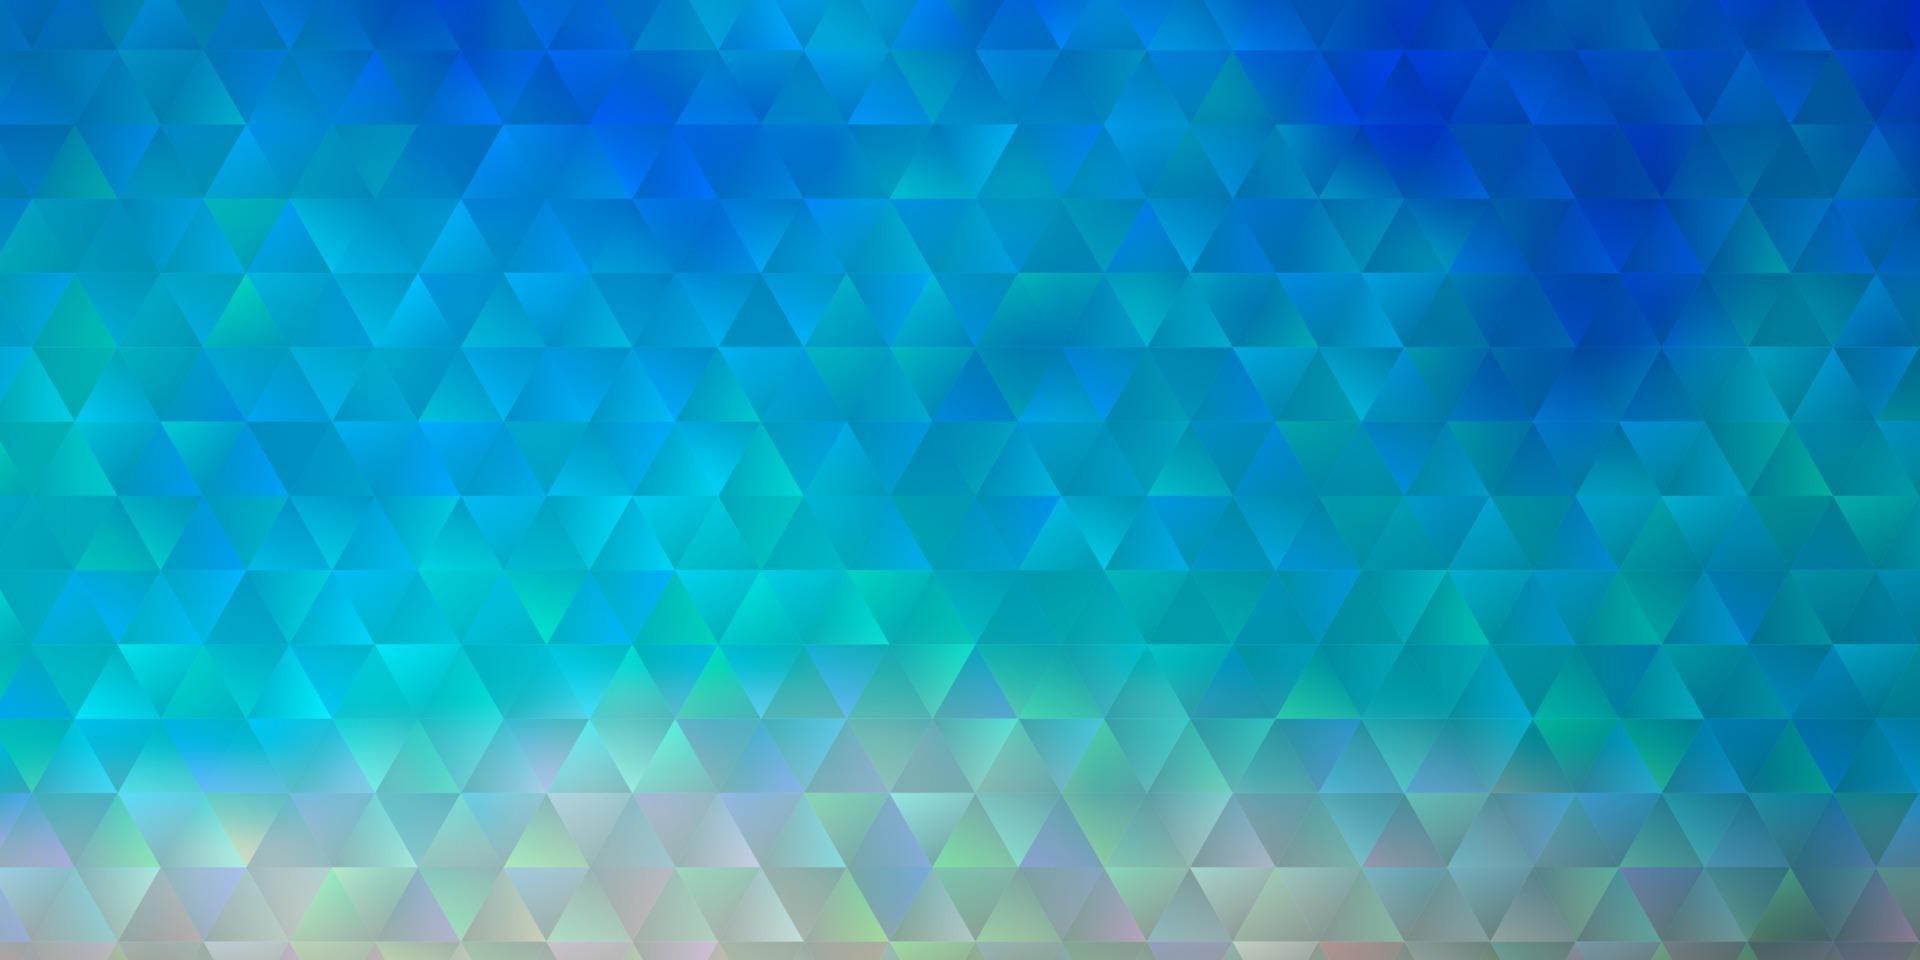 Fondo de vector azul claro, amarillo con triángulos.